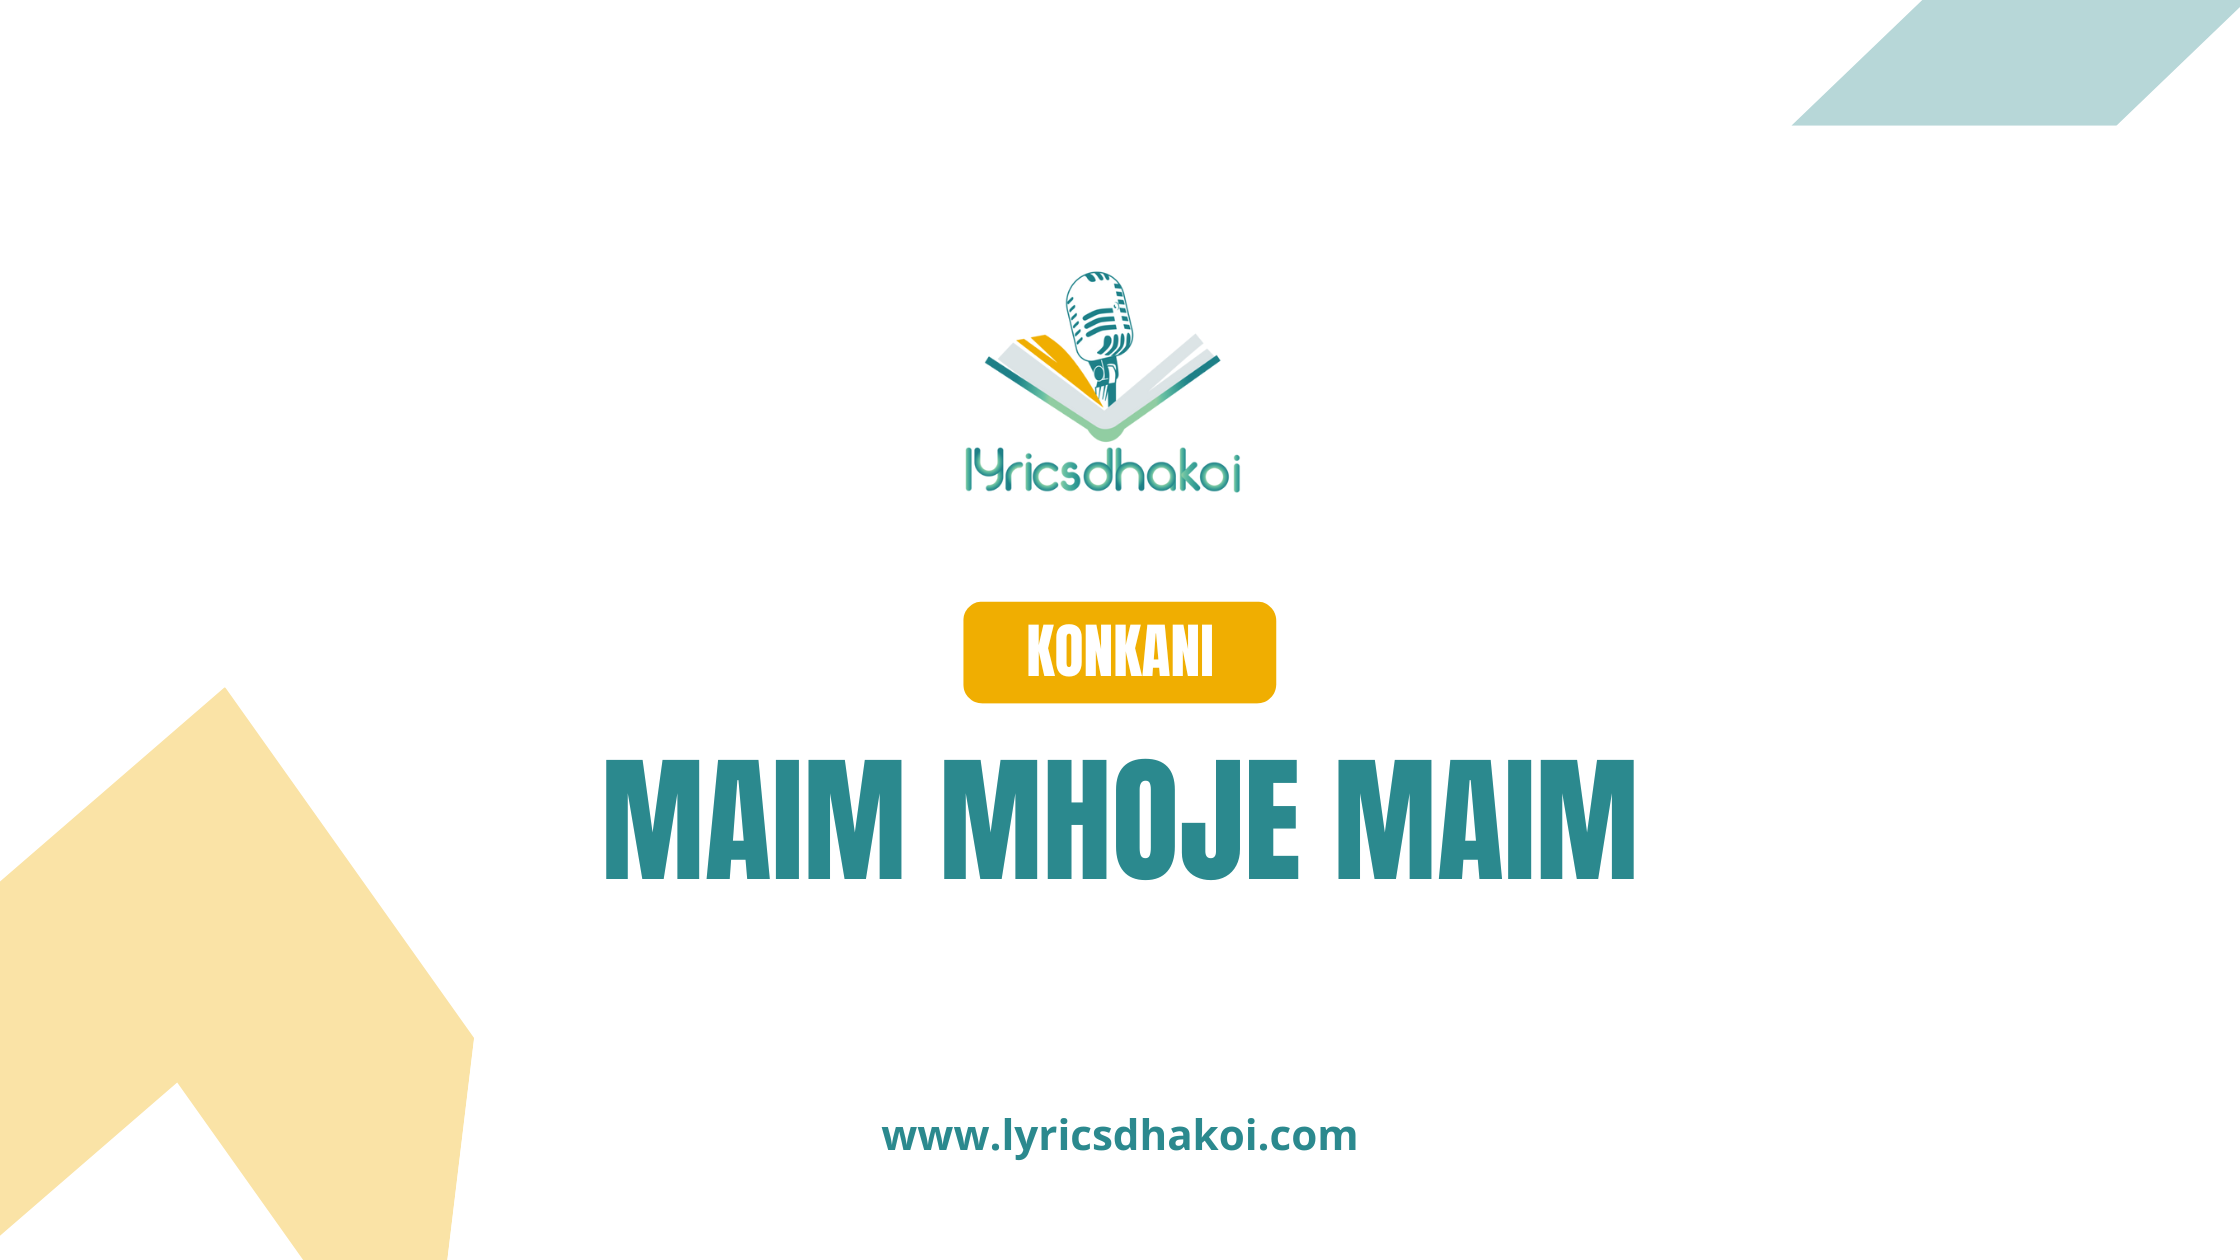 maim mhoje maim Konkani Lyrics for Karaoke Online - LyricsDhakoi.com